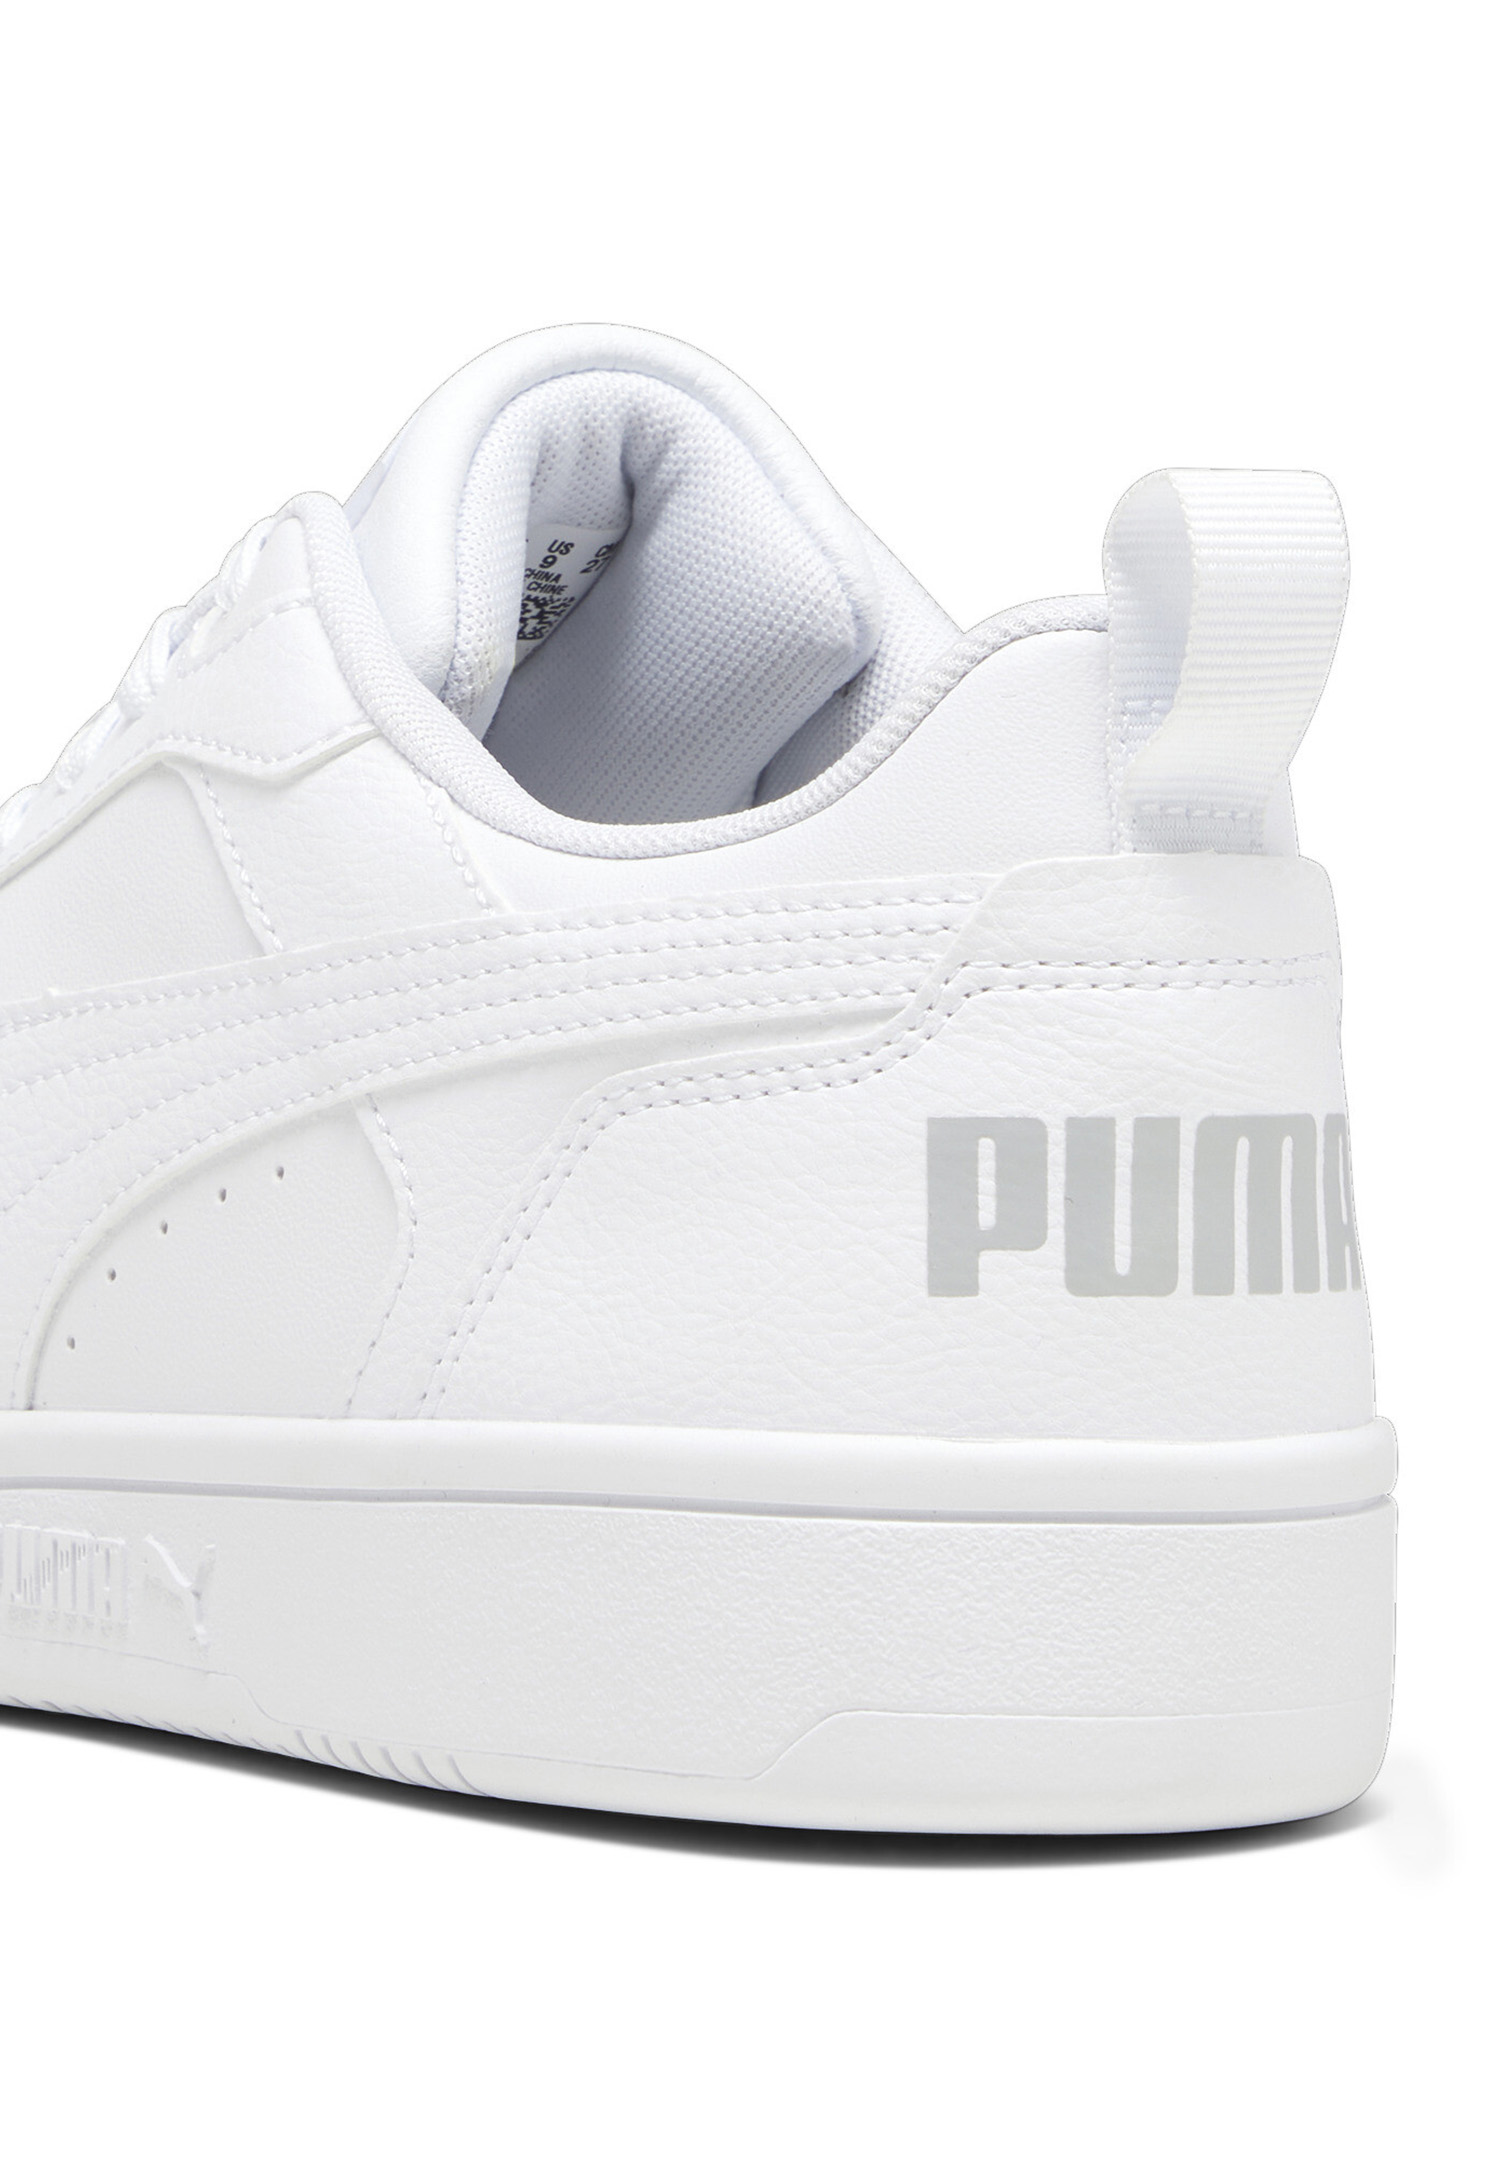 Puma Rebound v6 Low Herren Sneaker Sportschuh 392328 03 weiss 